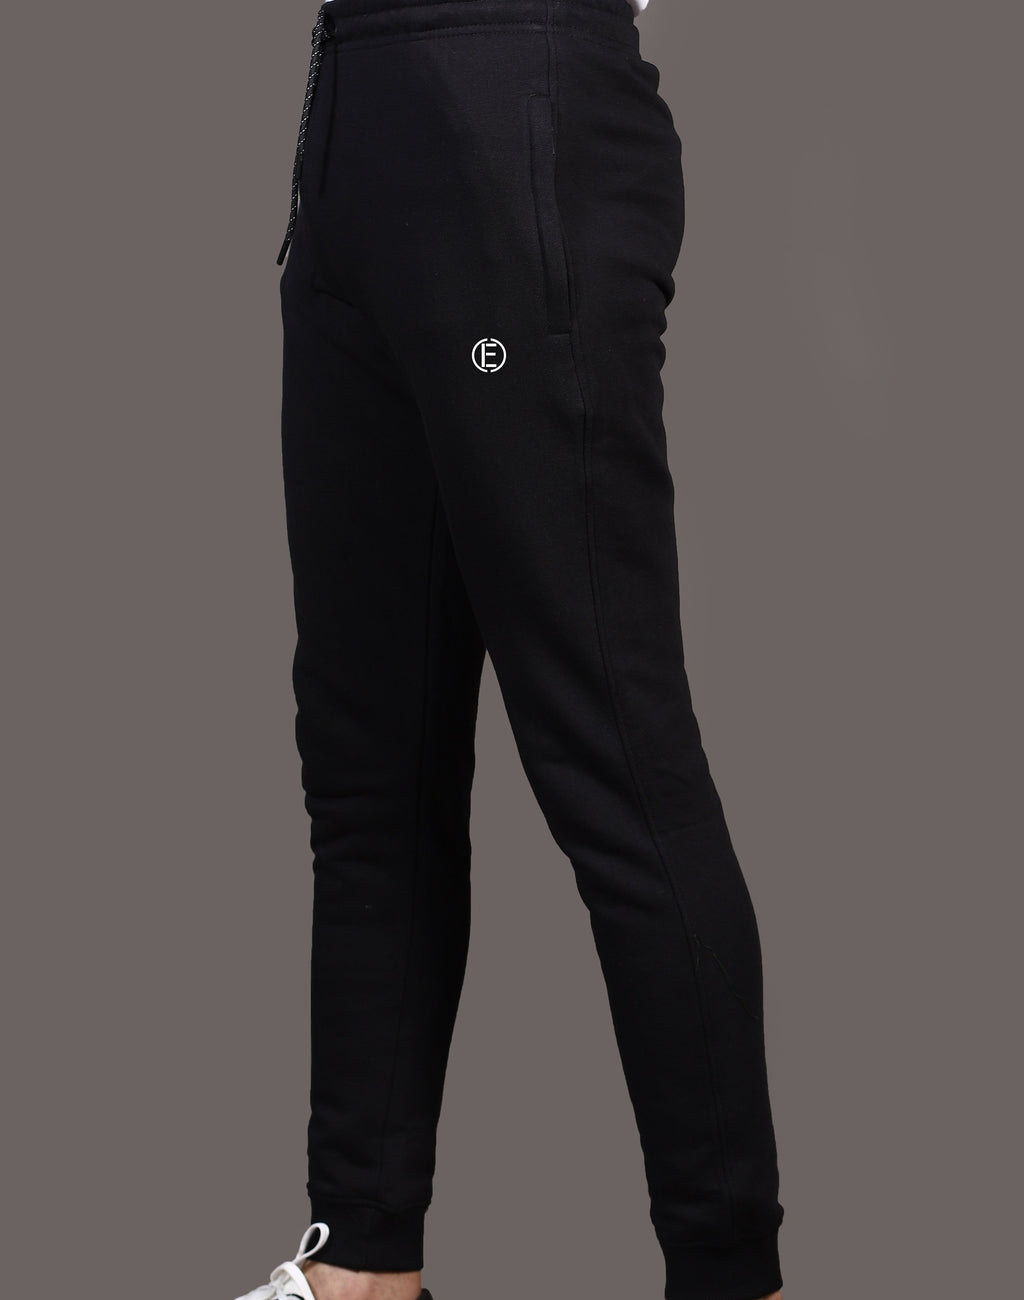 Solid Black Premium Trouser